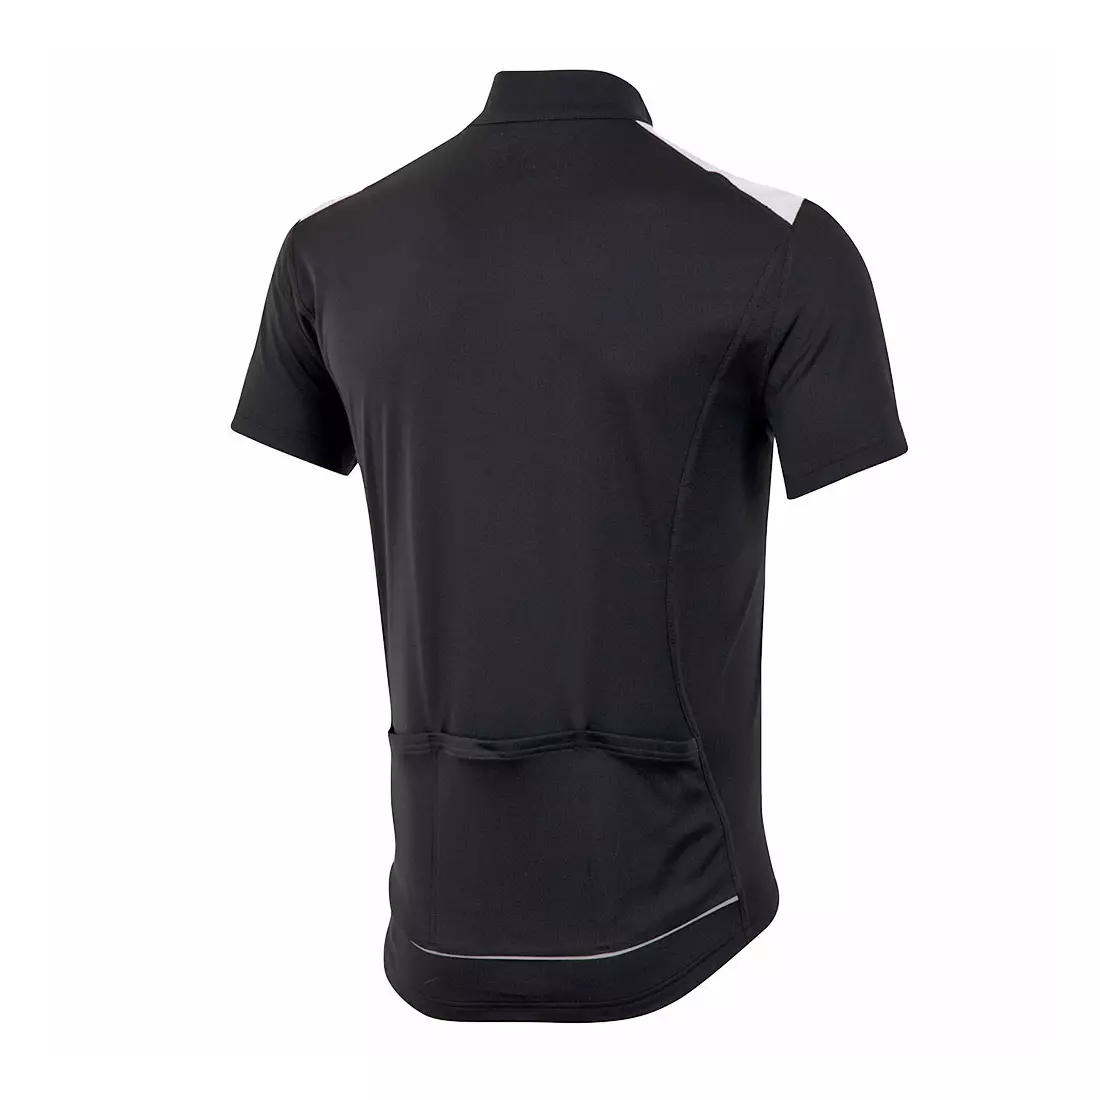 PEARL IZUMI SELECT QUEST - tricou de ciclism pentru bărbați 11121407-021